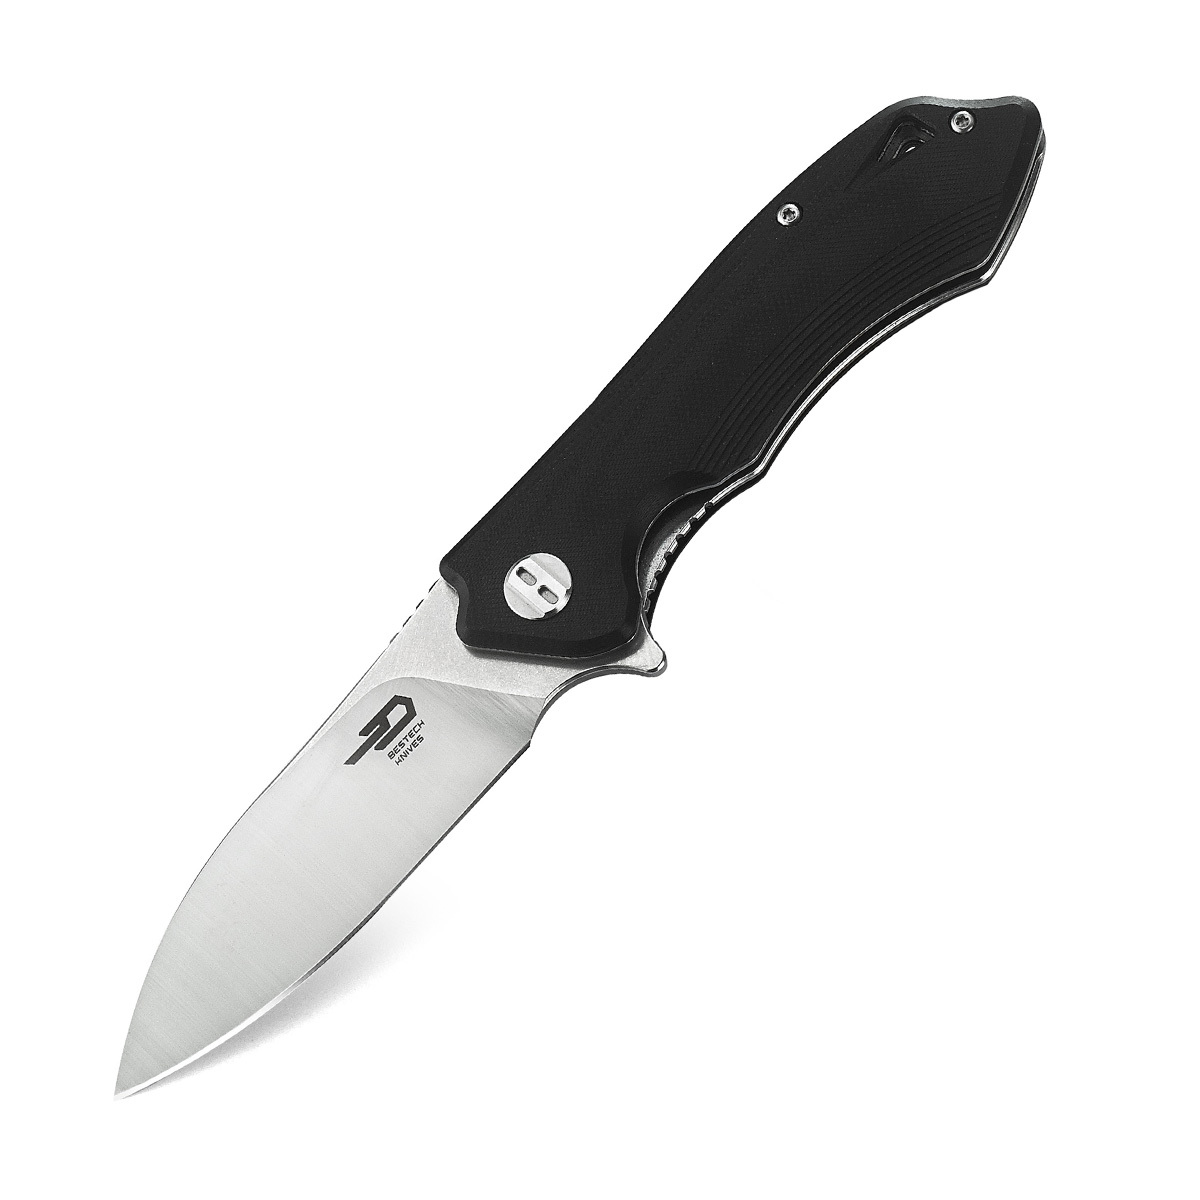 Складной нож Bestech Beluga, сталь D2, рукоять черная G10 складной нож bestech swift сталь d2 micarta